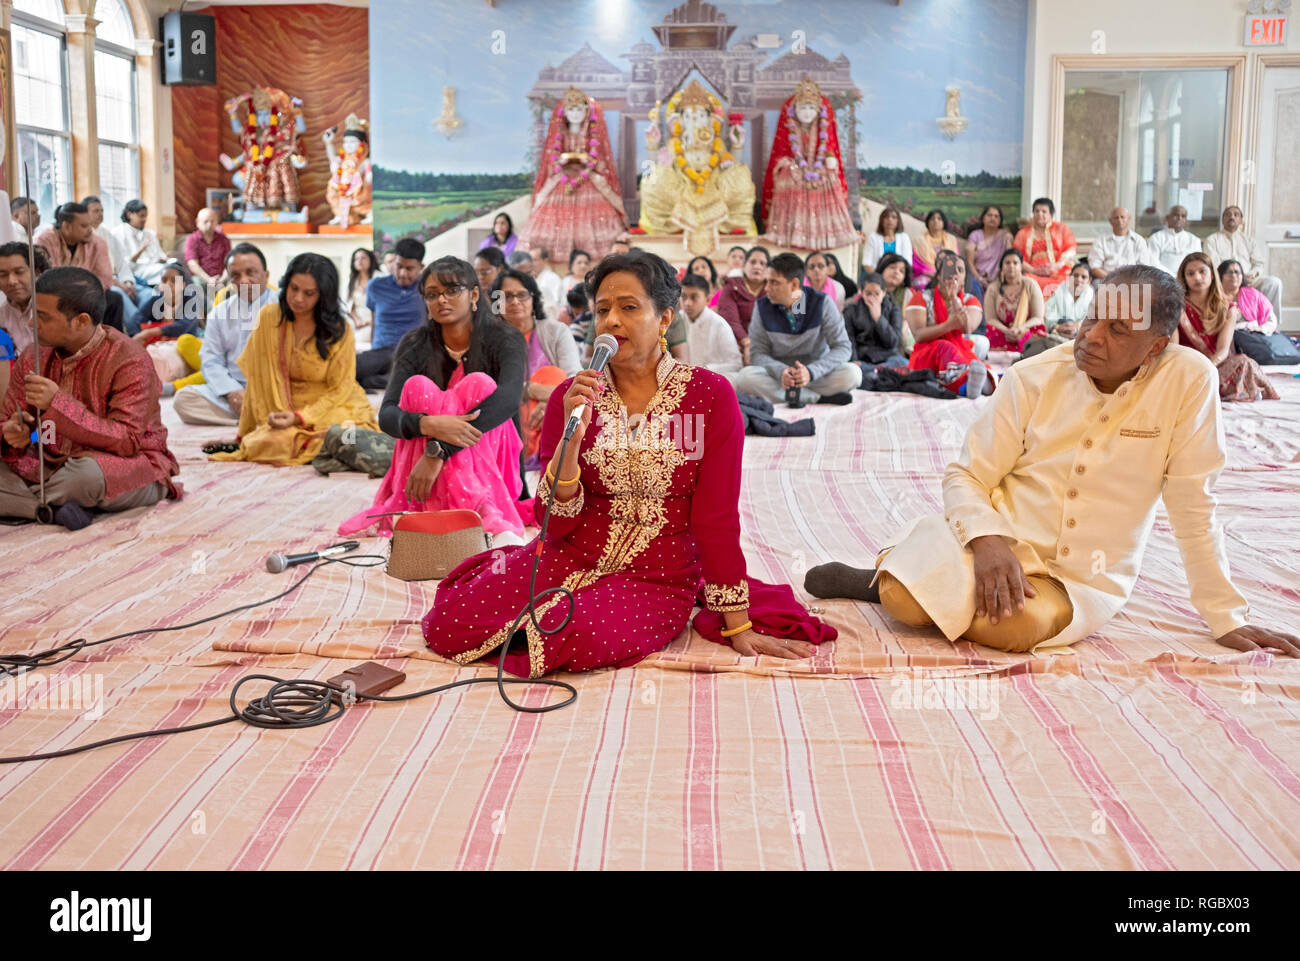 Avec son mari à ses côtés, une femme hindoue chante une prière lors d'une congrégation dans le Queens, New York. Banque D'Images